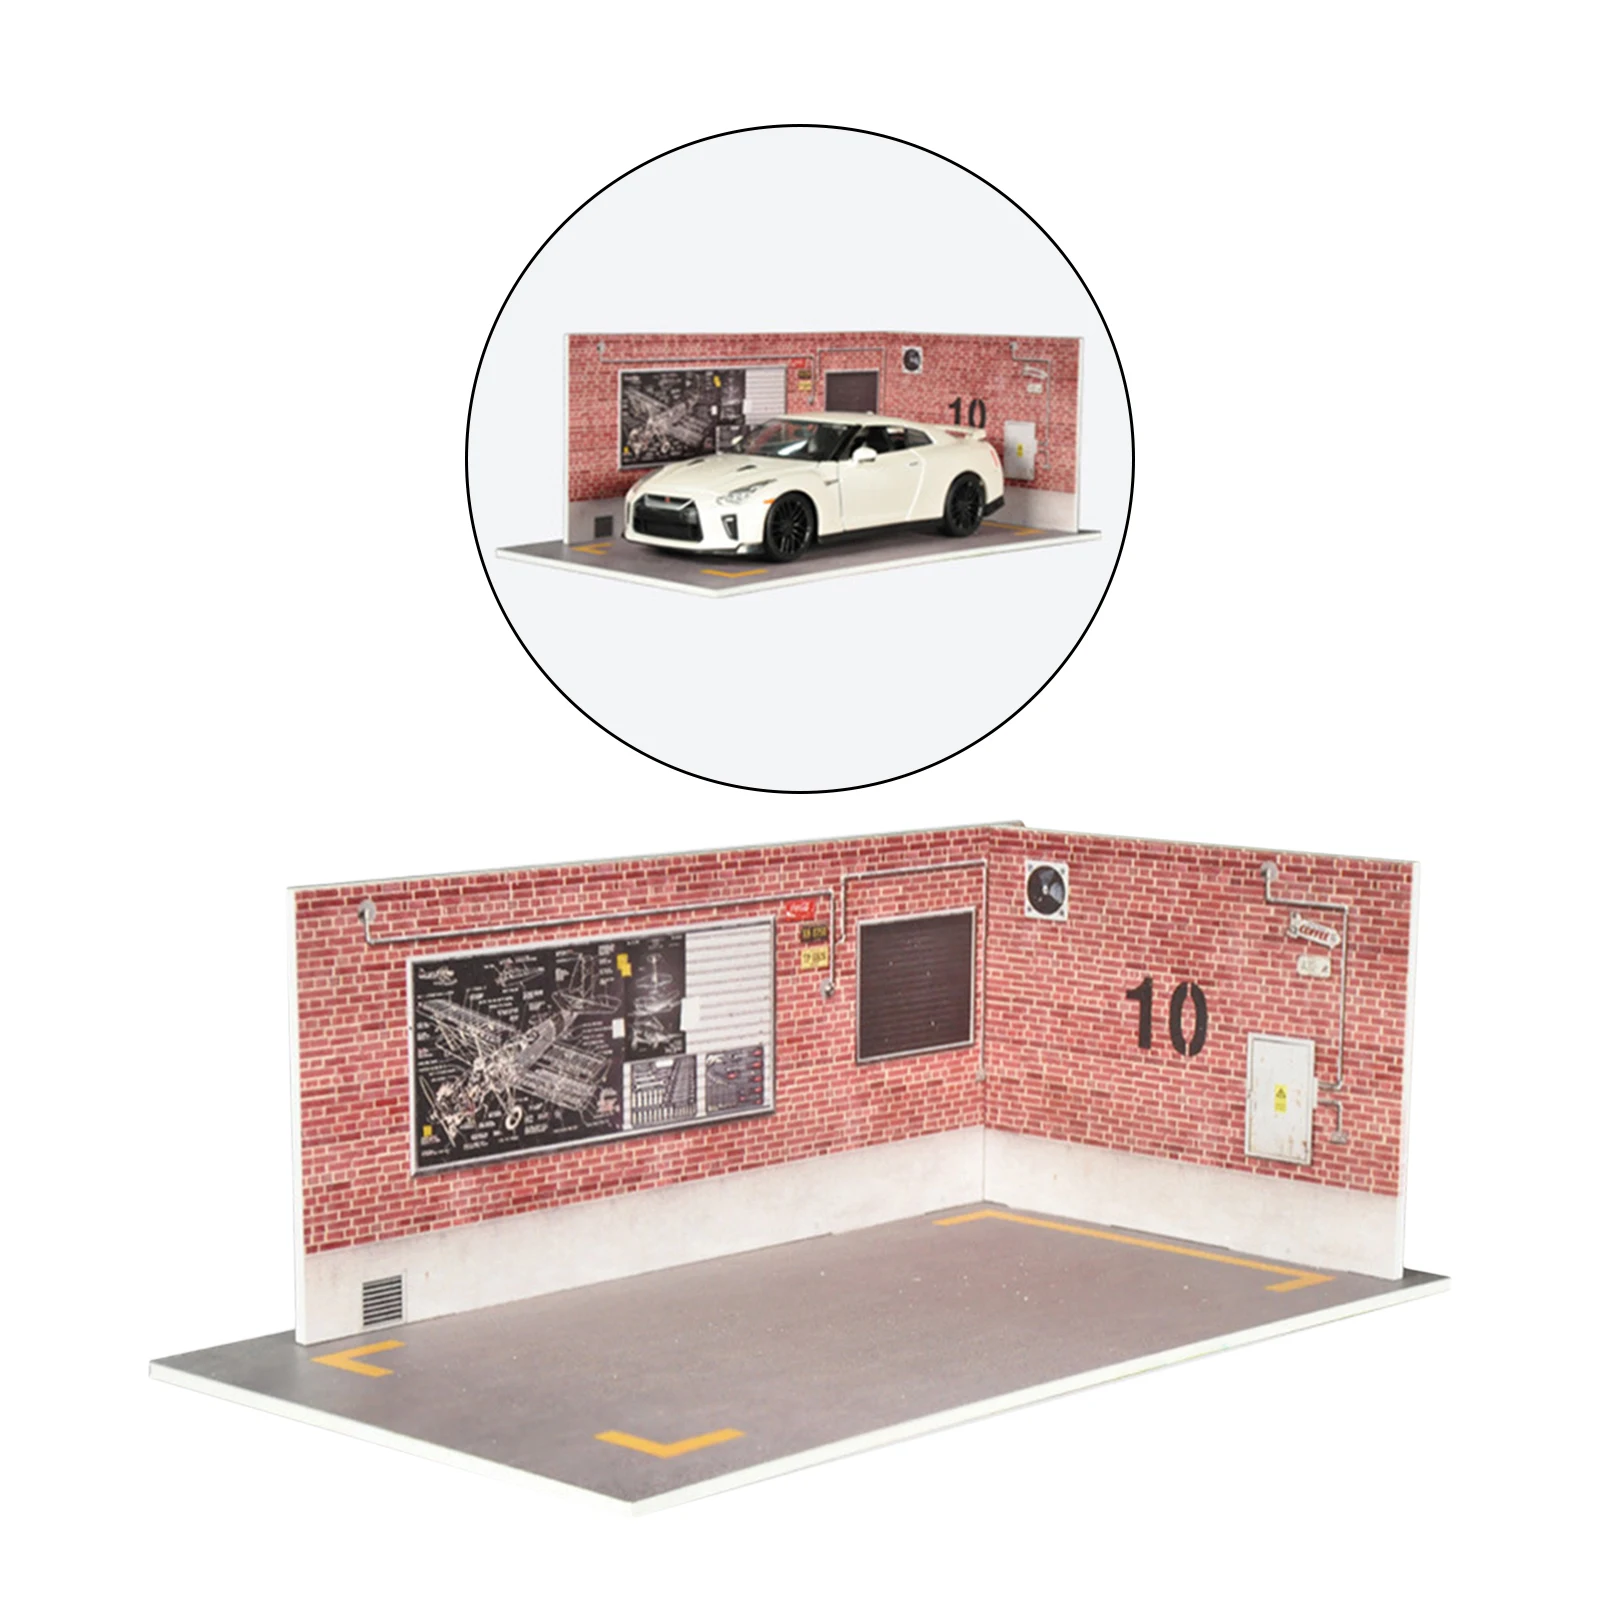 Details about   Exquisite 1/24 Parking Lot Scene DIY Modified Garage Table Decor Ornament 